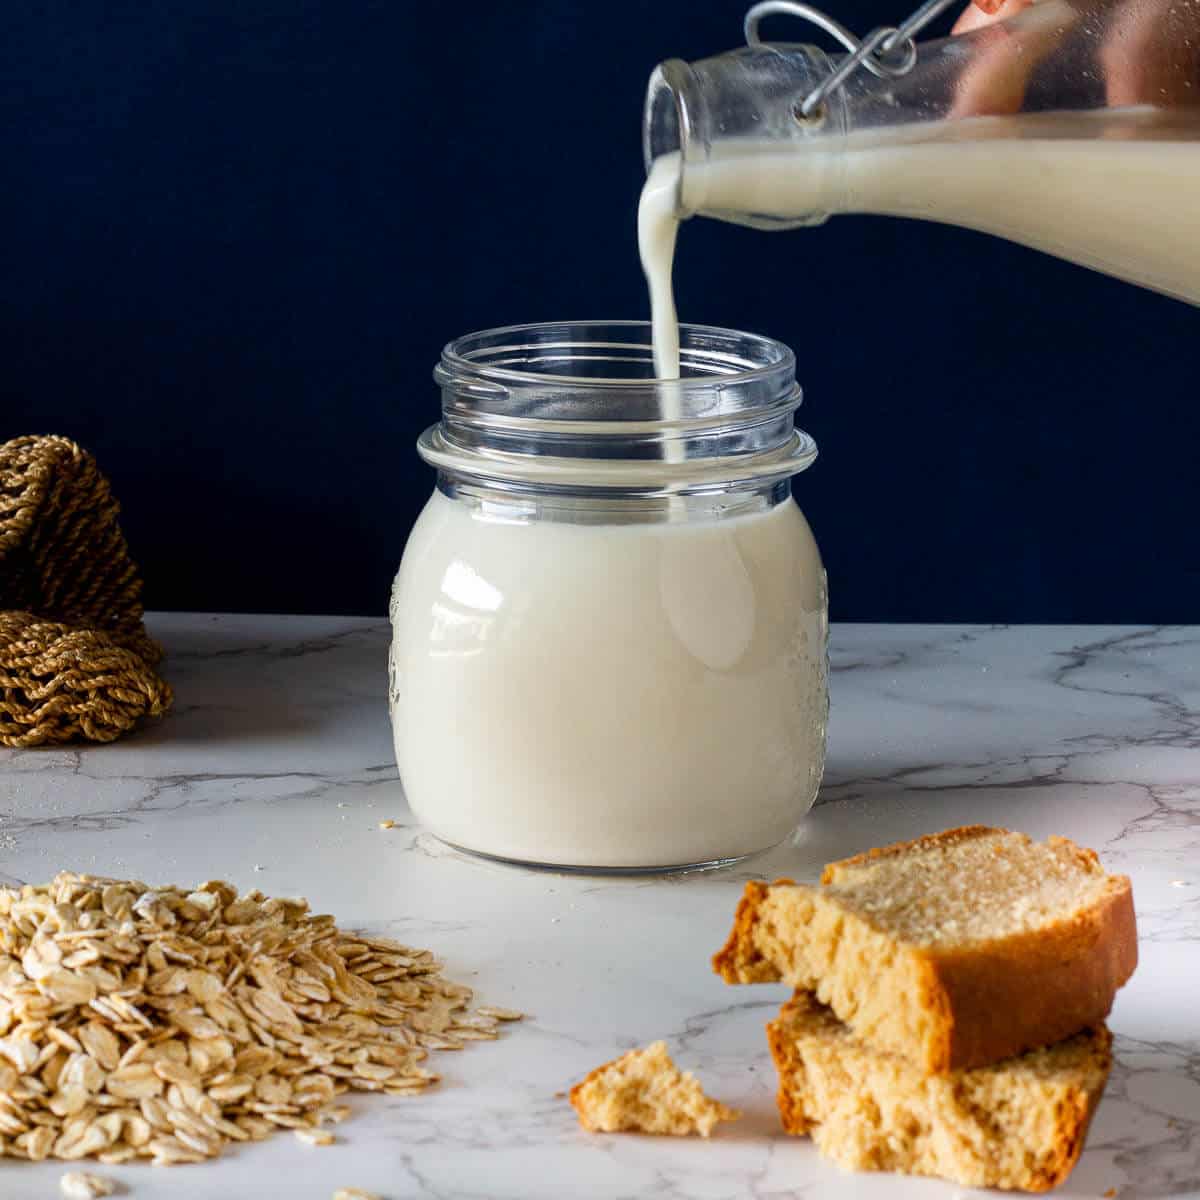 Es la leche de avena tan saludable como crees?